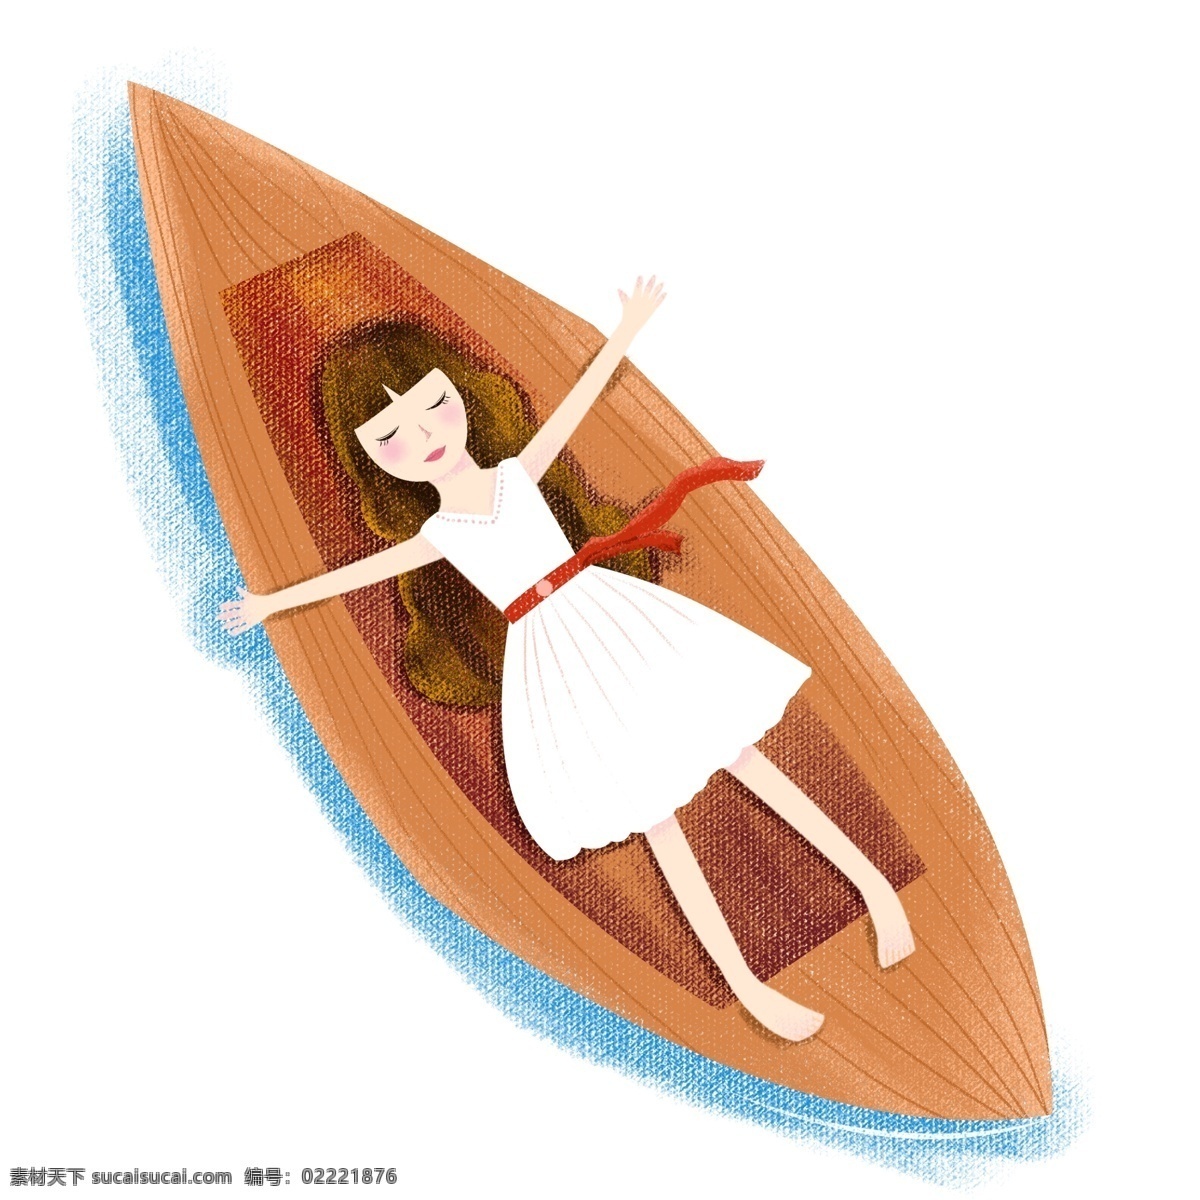 手绘 躺 船 里 女孩儿 卡通 清新 女孩 人物 躺着 休息 人物插画 psd元素